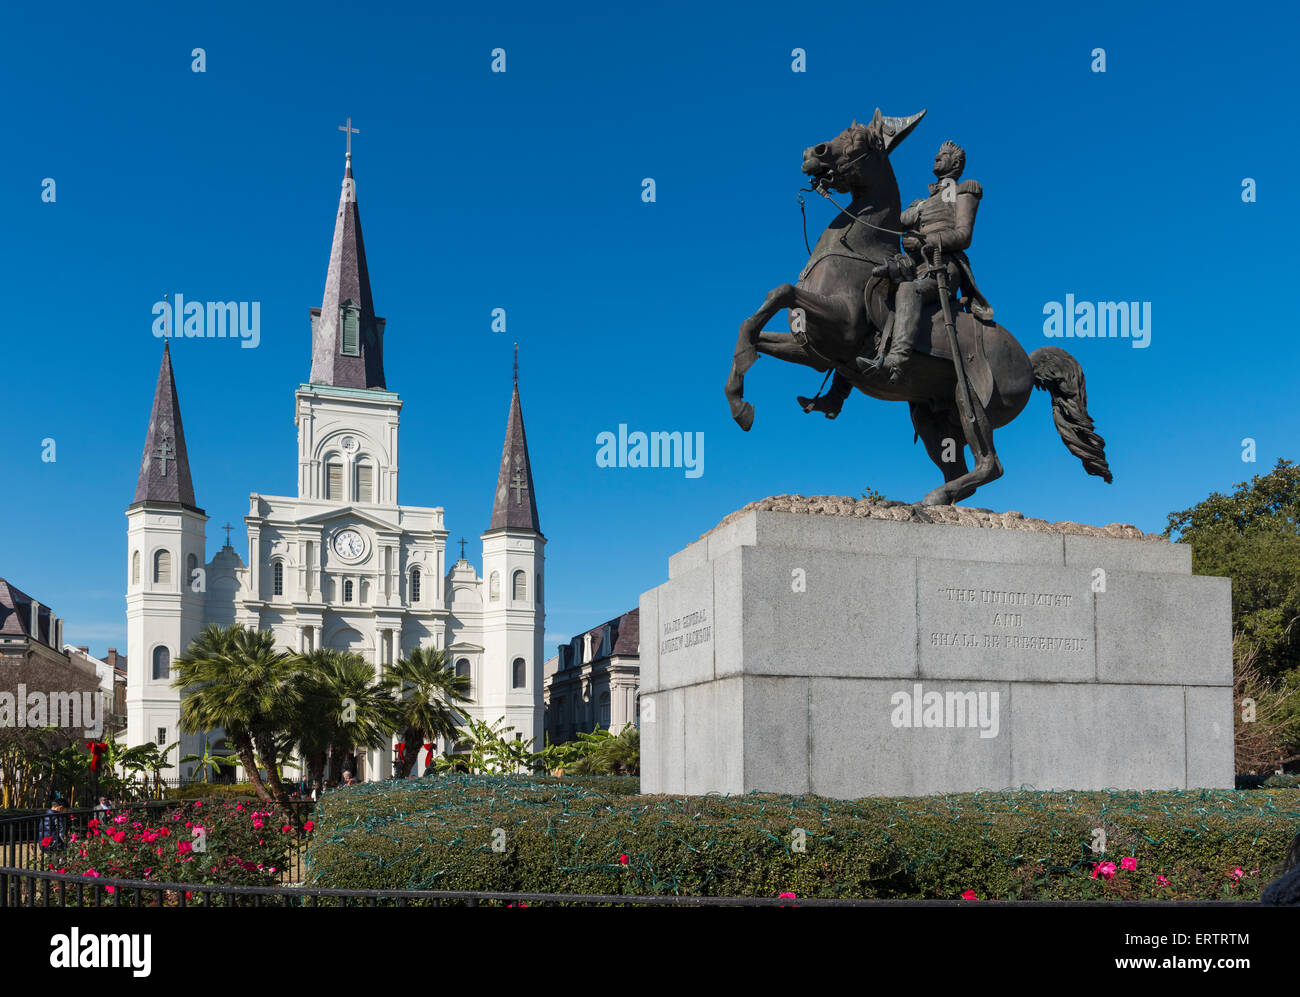 La Cathédrale St Louis, La Nouvelle-Orléans avec la statue du général Andrew Jackson, Louisiane, États-Unis Banque D'Images